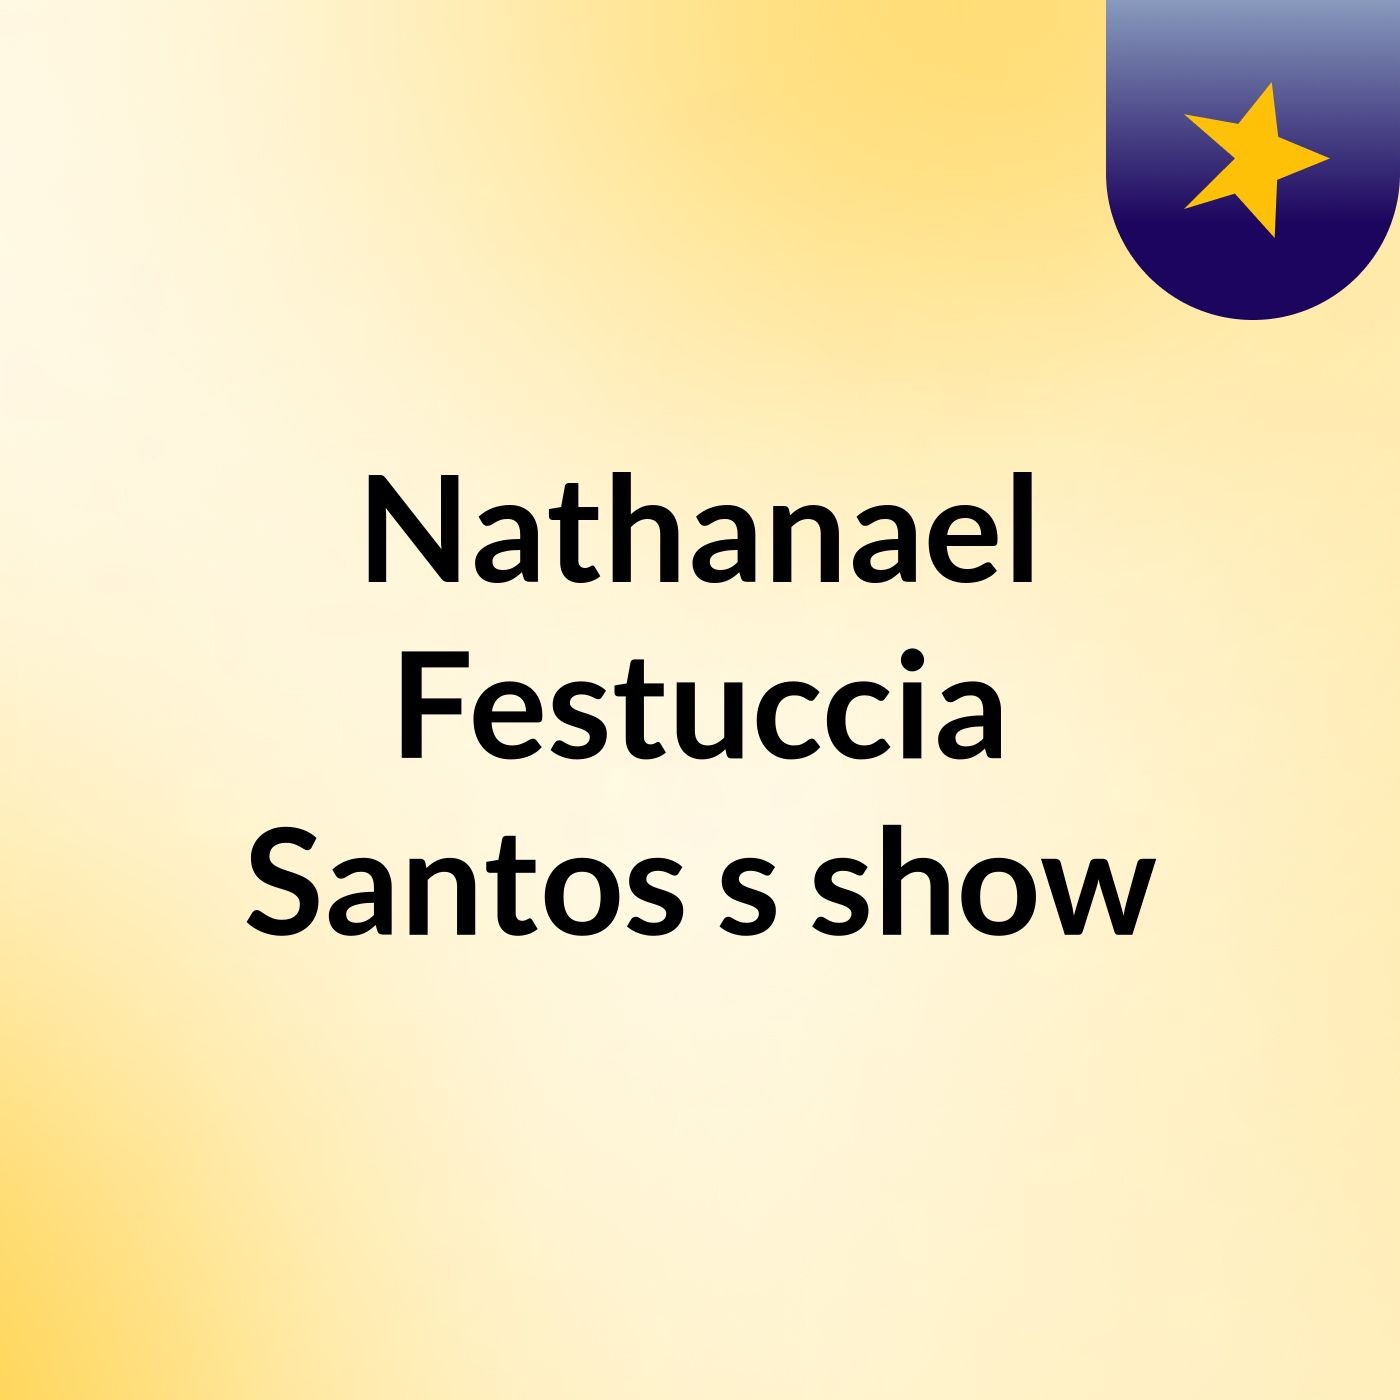 Nathanael Festuccia Santos's show